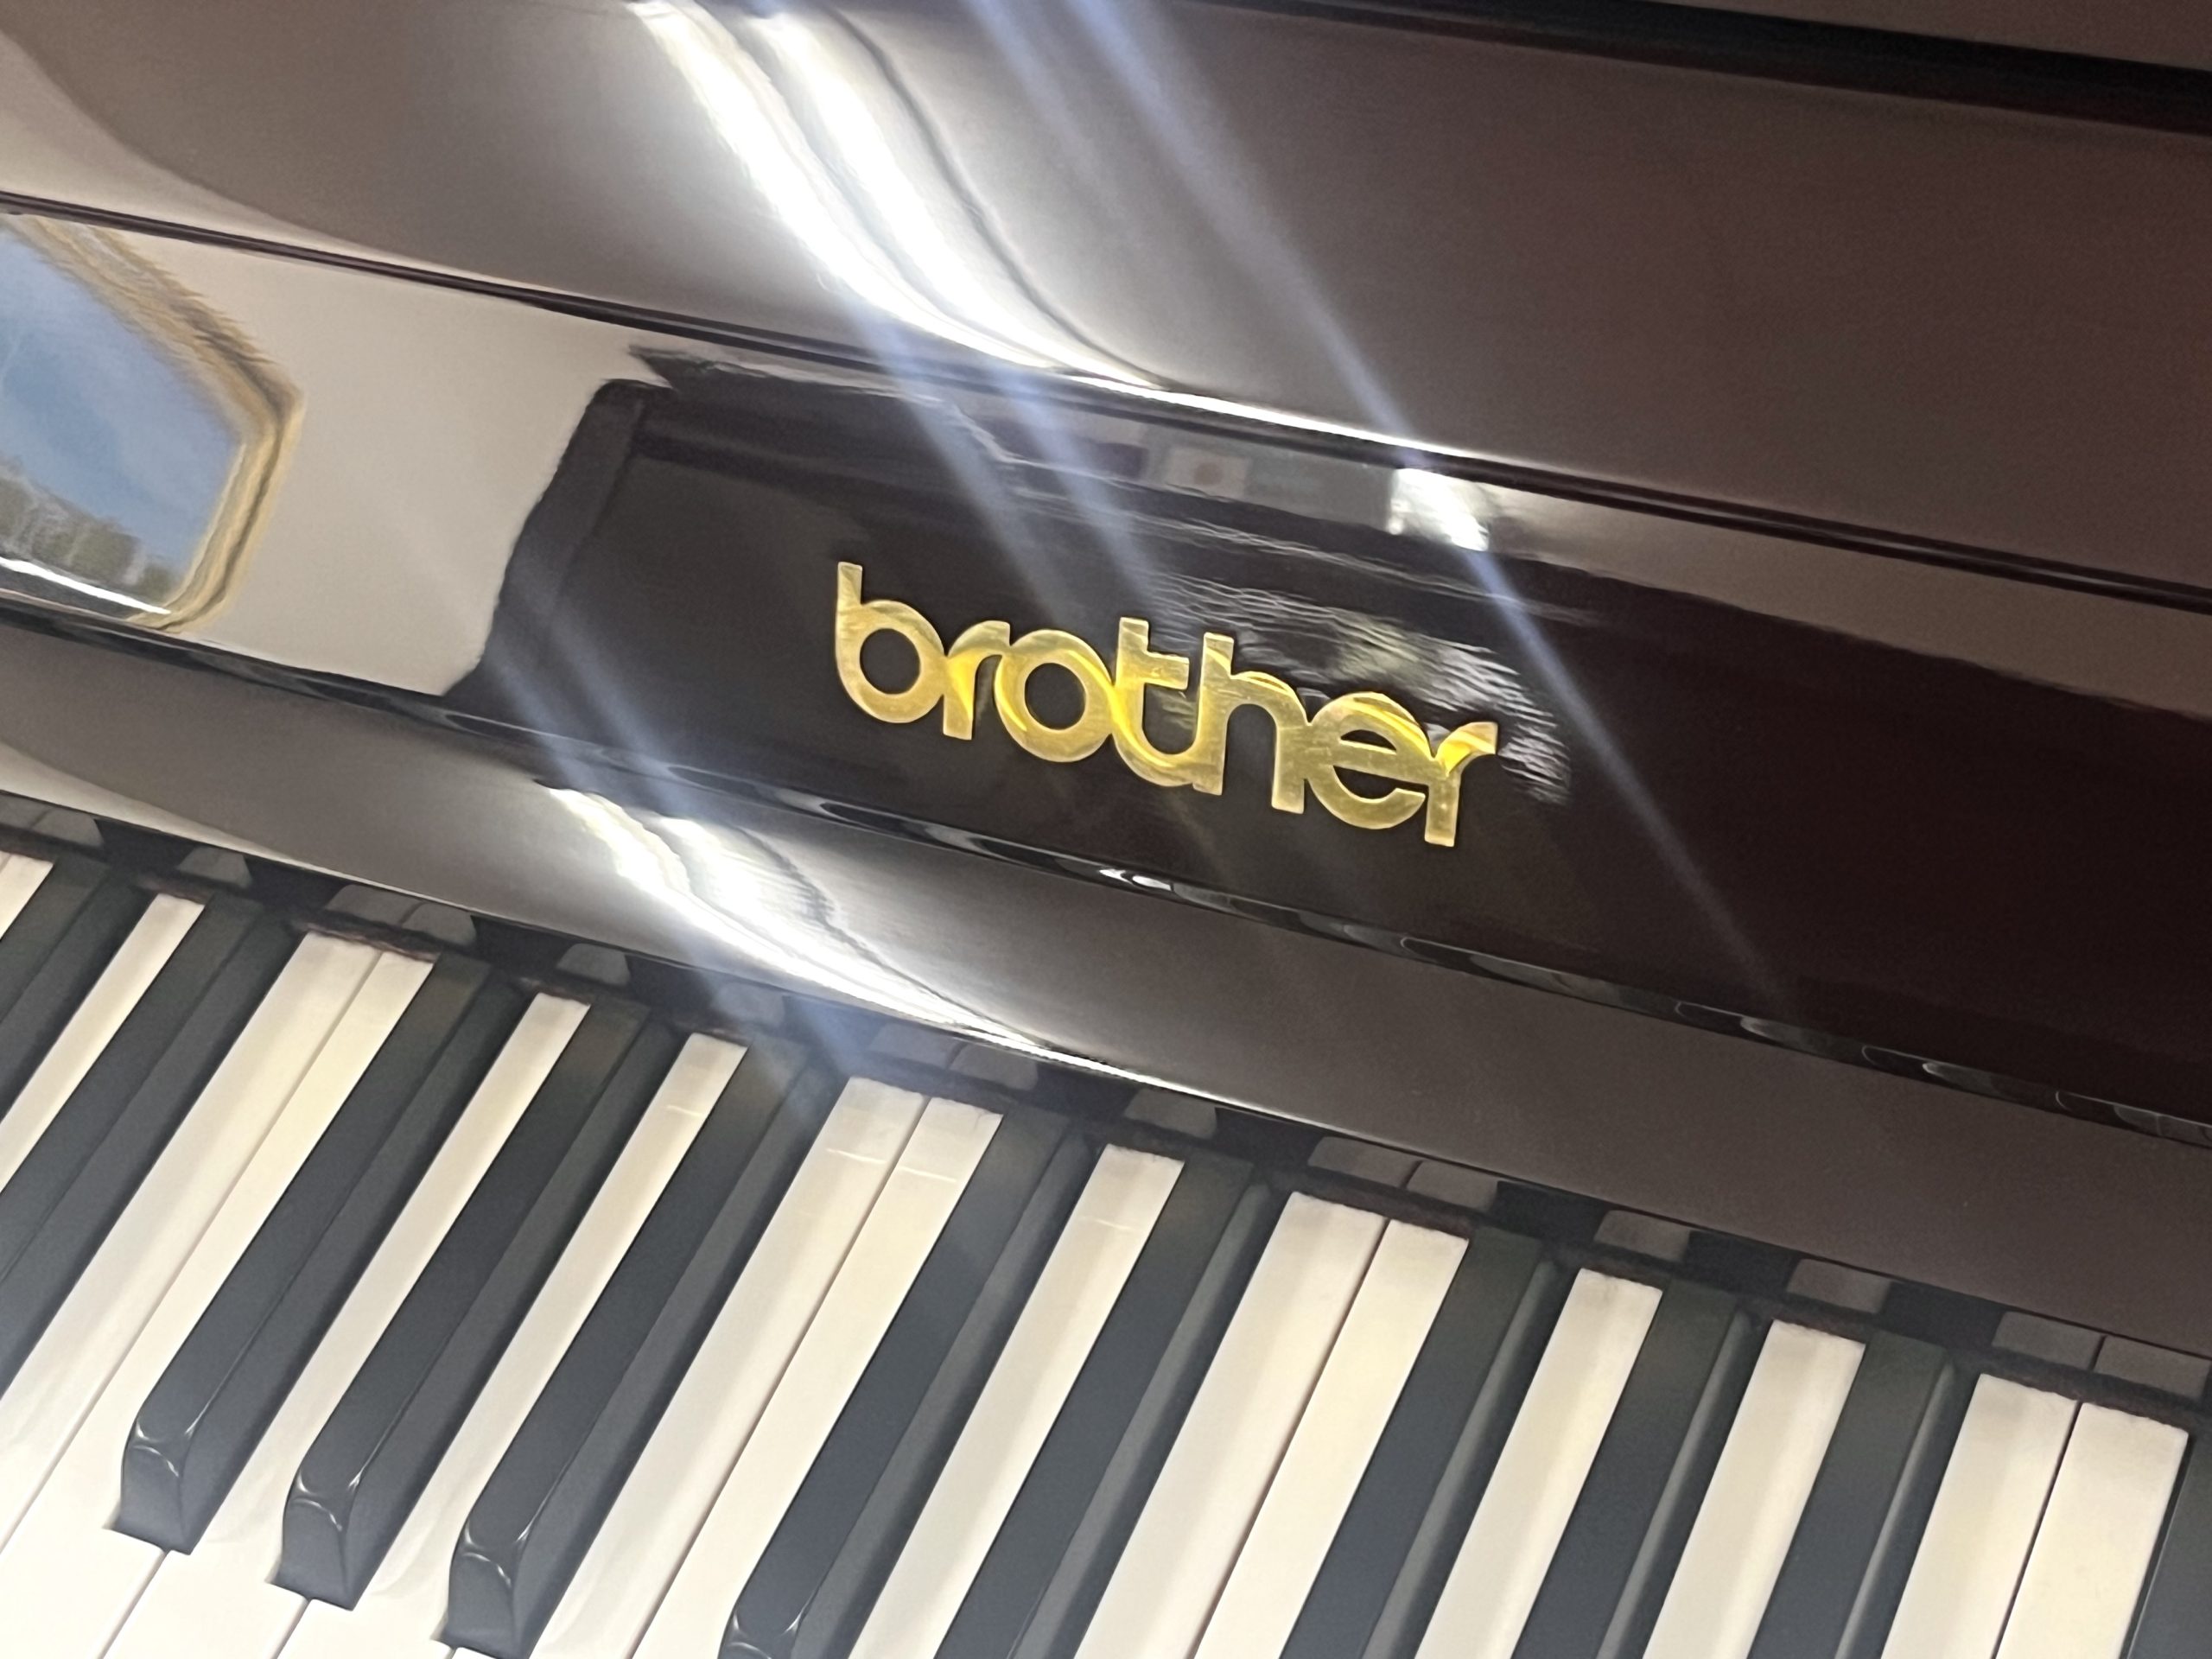 アトラス中古アップライトピアノ brother GU-114M│ピアノ百貨公式サイト